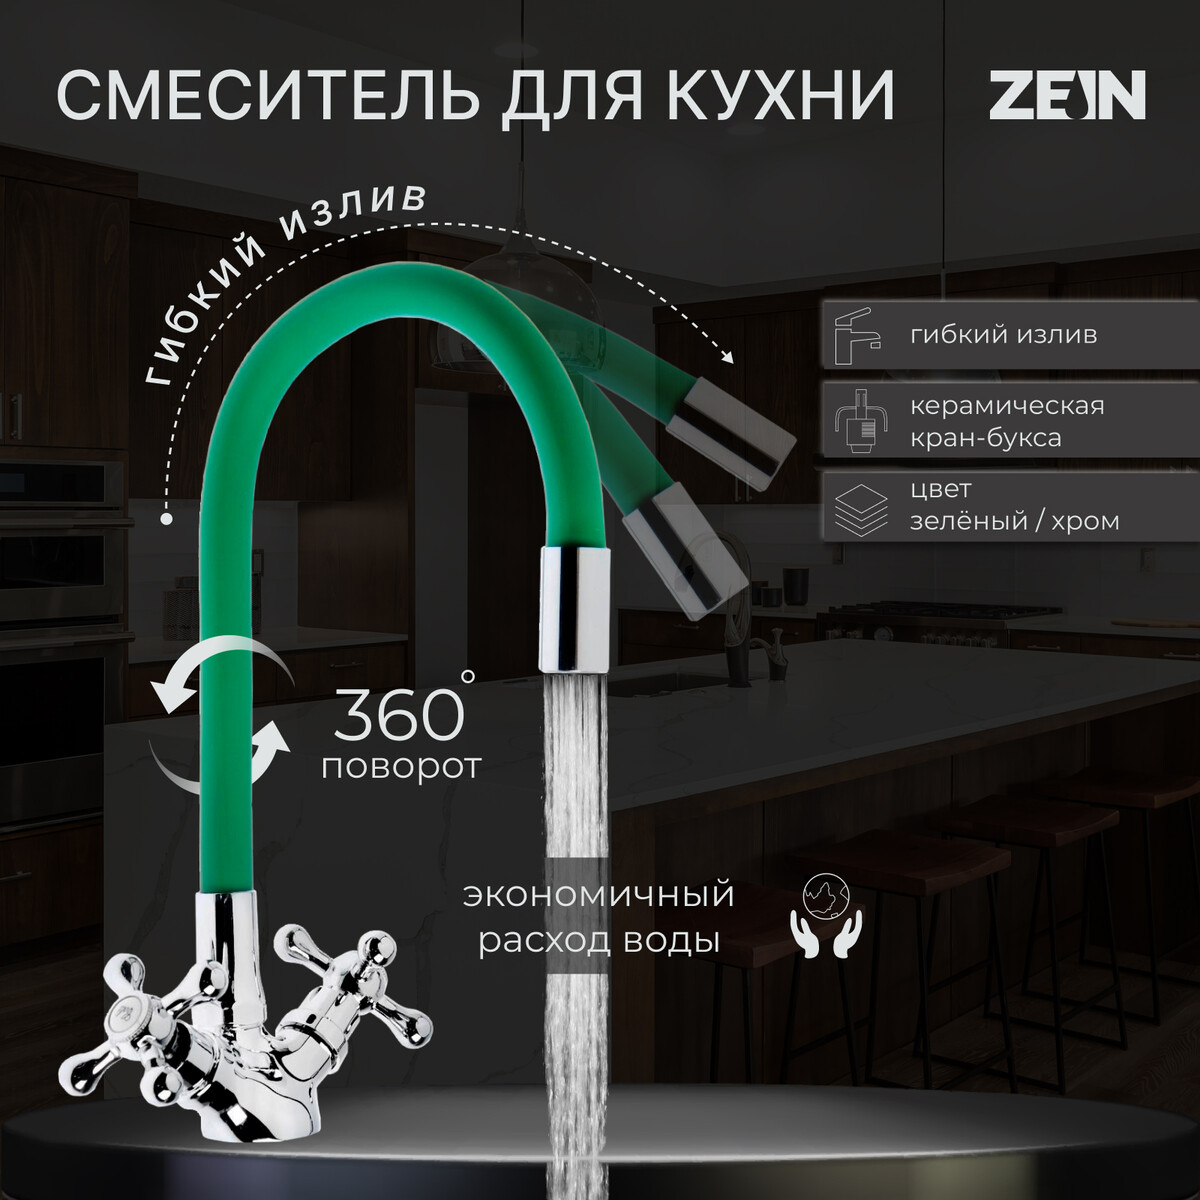 Смеситель для кухни zein z2102, двухвентильный, силиконовый излив, зеленый/хром смеситель для кухни g lauf с картриджем хром 8g4 a018